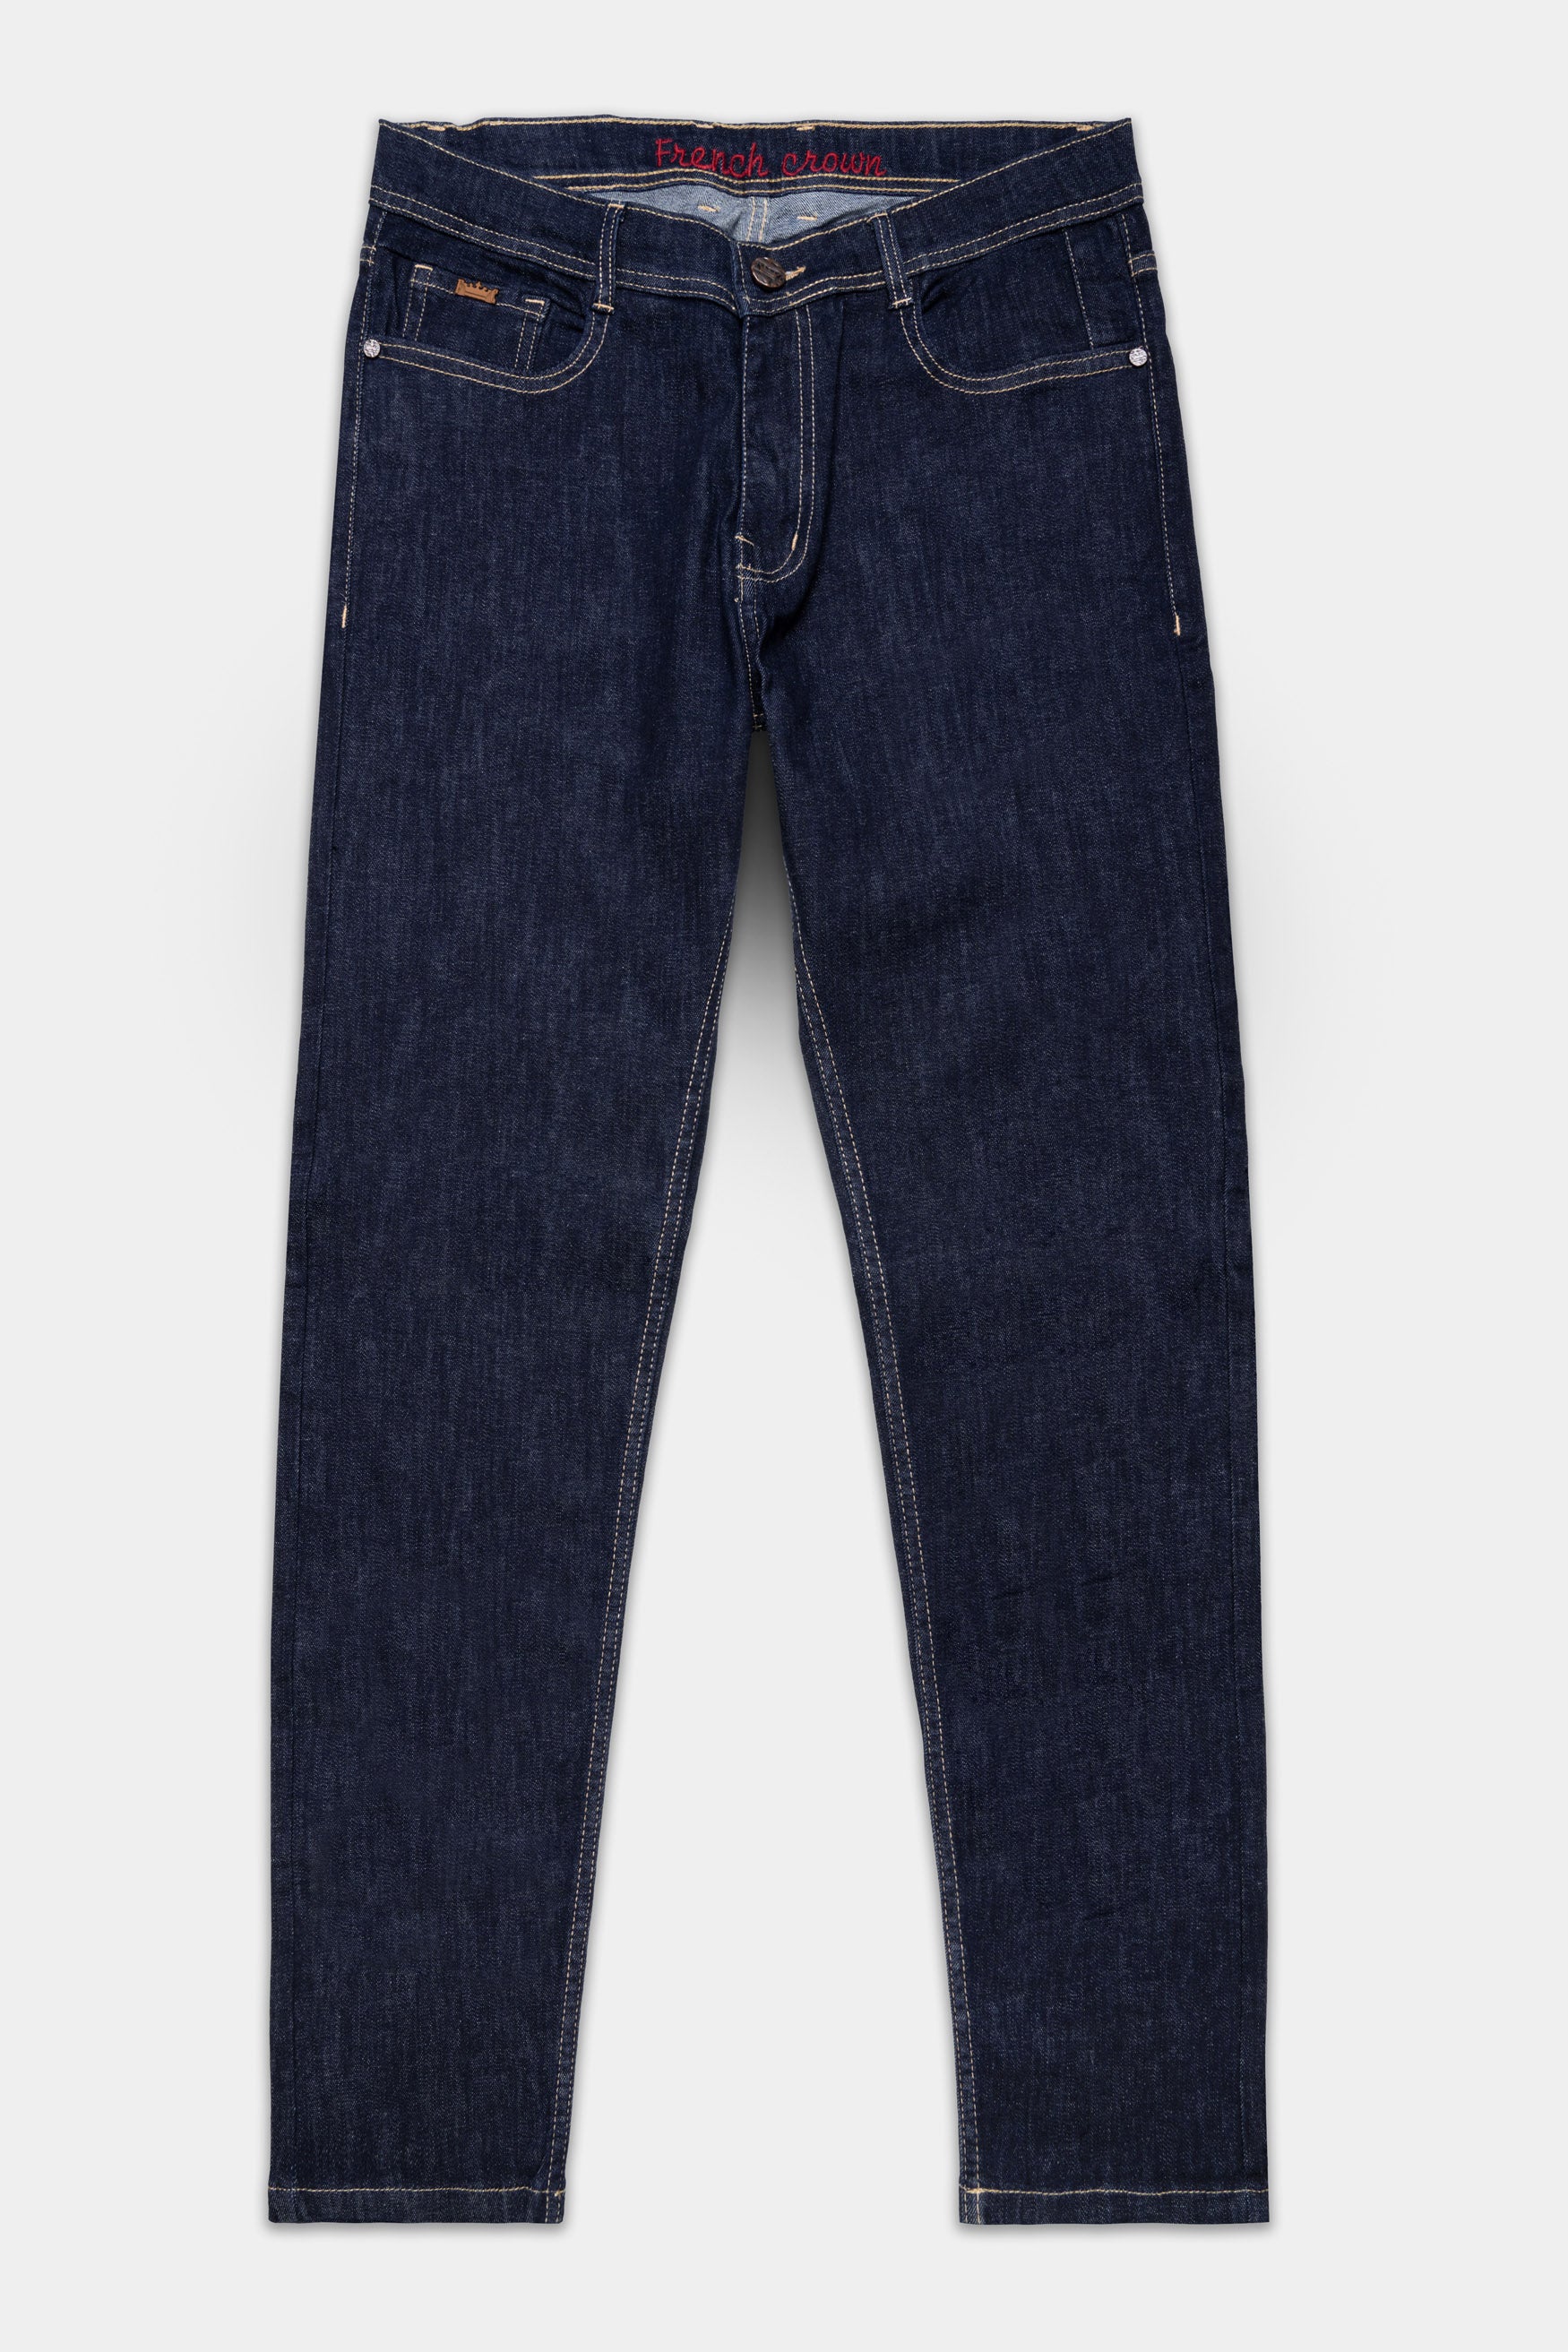 Buy Blue Ankle Fit Denim Jeans Online | Tistabene - Tistabene